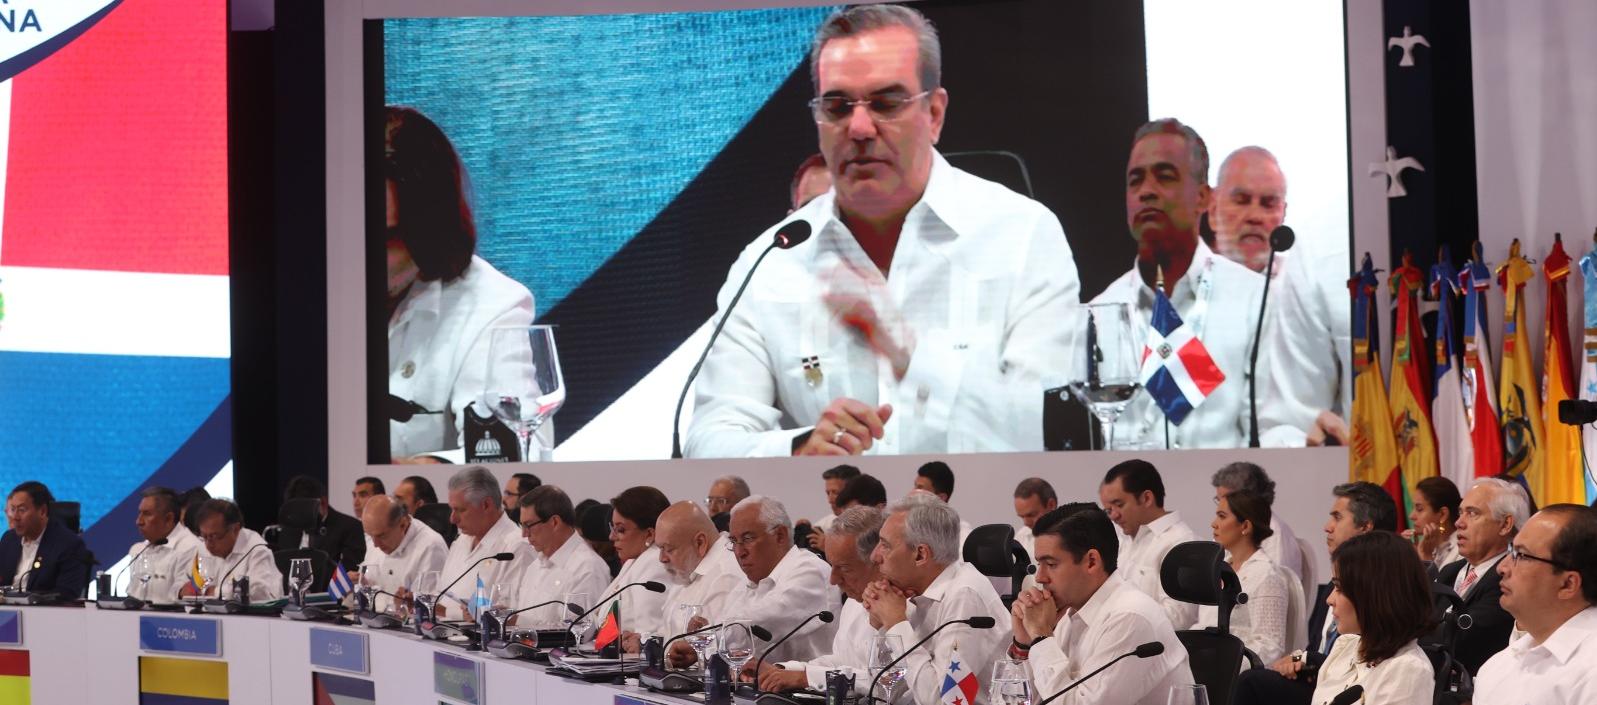 El presidente de la República Dominicana, Luis Abinader habla durante la XXVIII Cumbre Iberoamericana